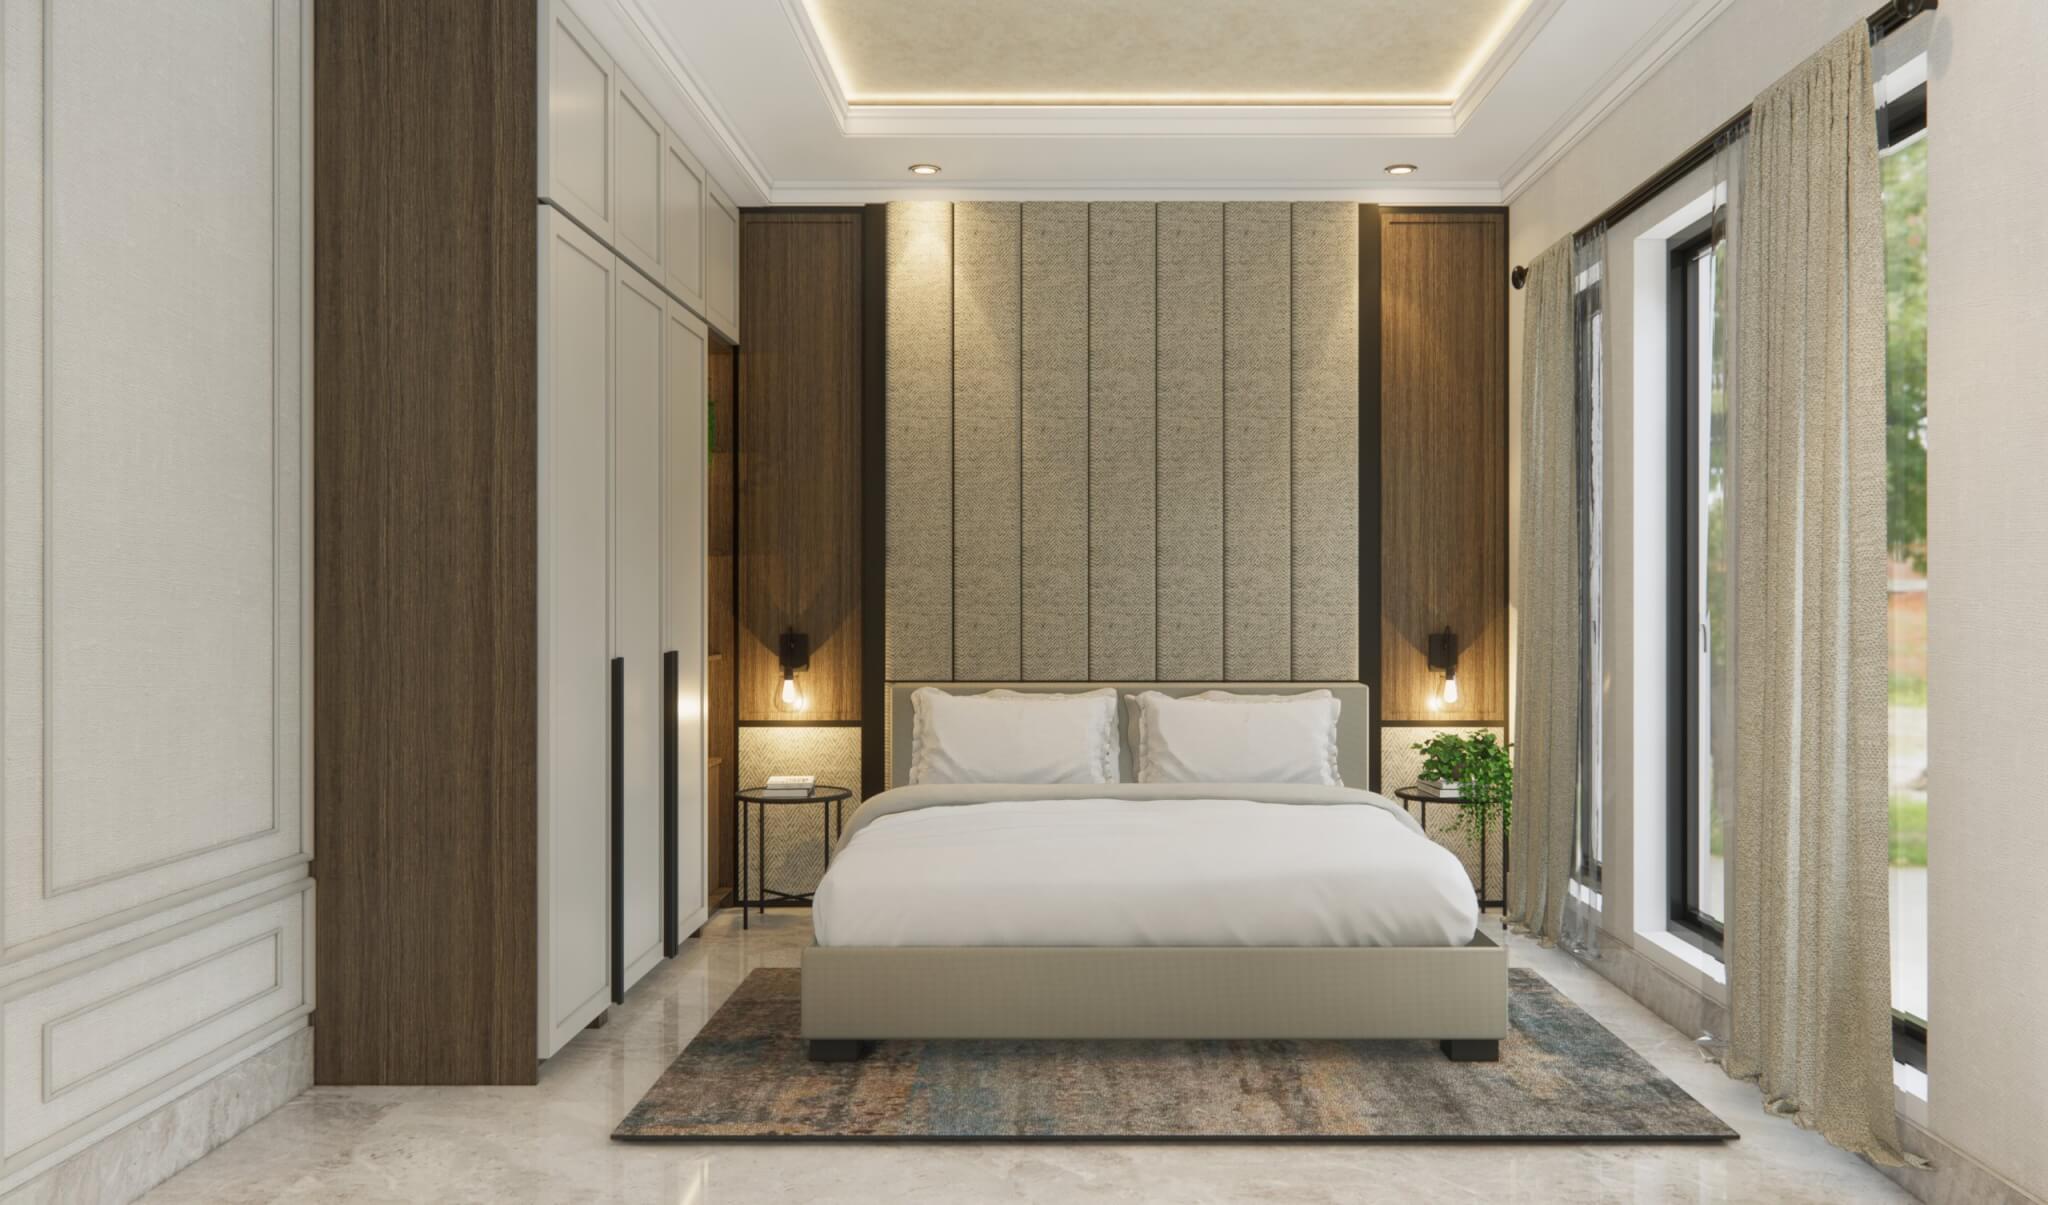 Inspirasi Denah Rumah Minimalis 3 Kamar Tidur Type 36 Interiordesign Id